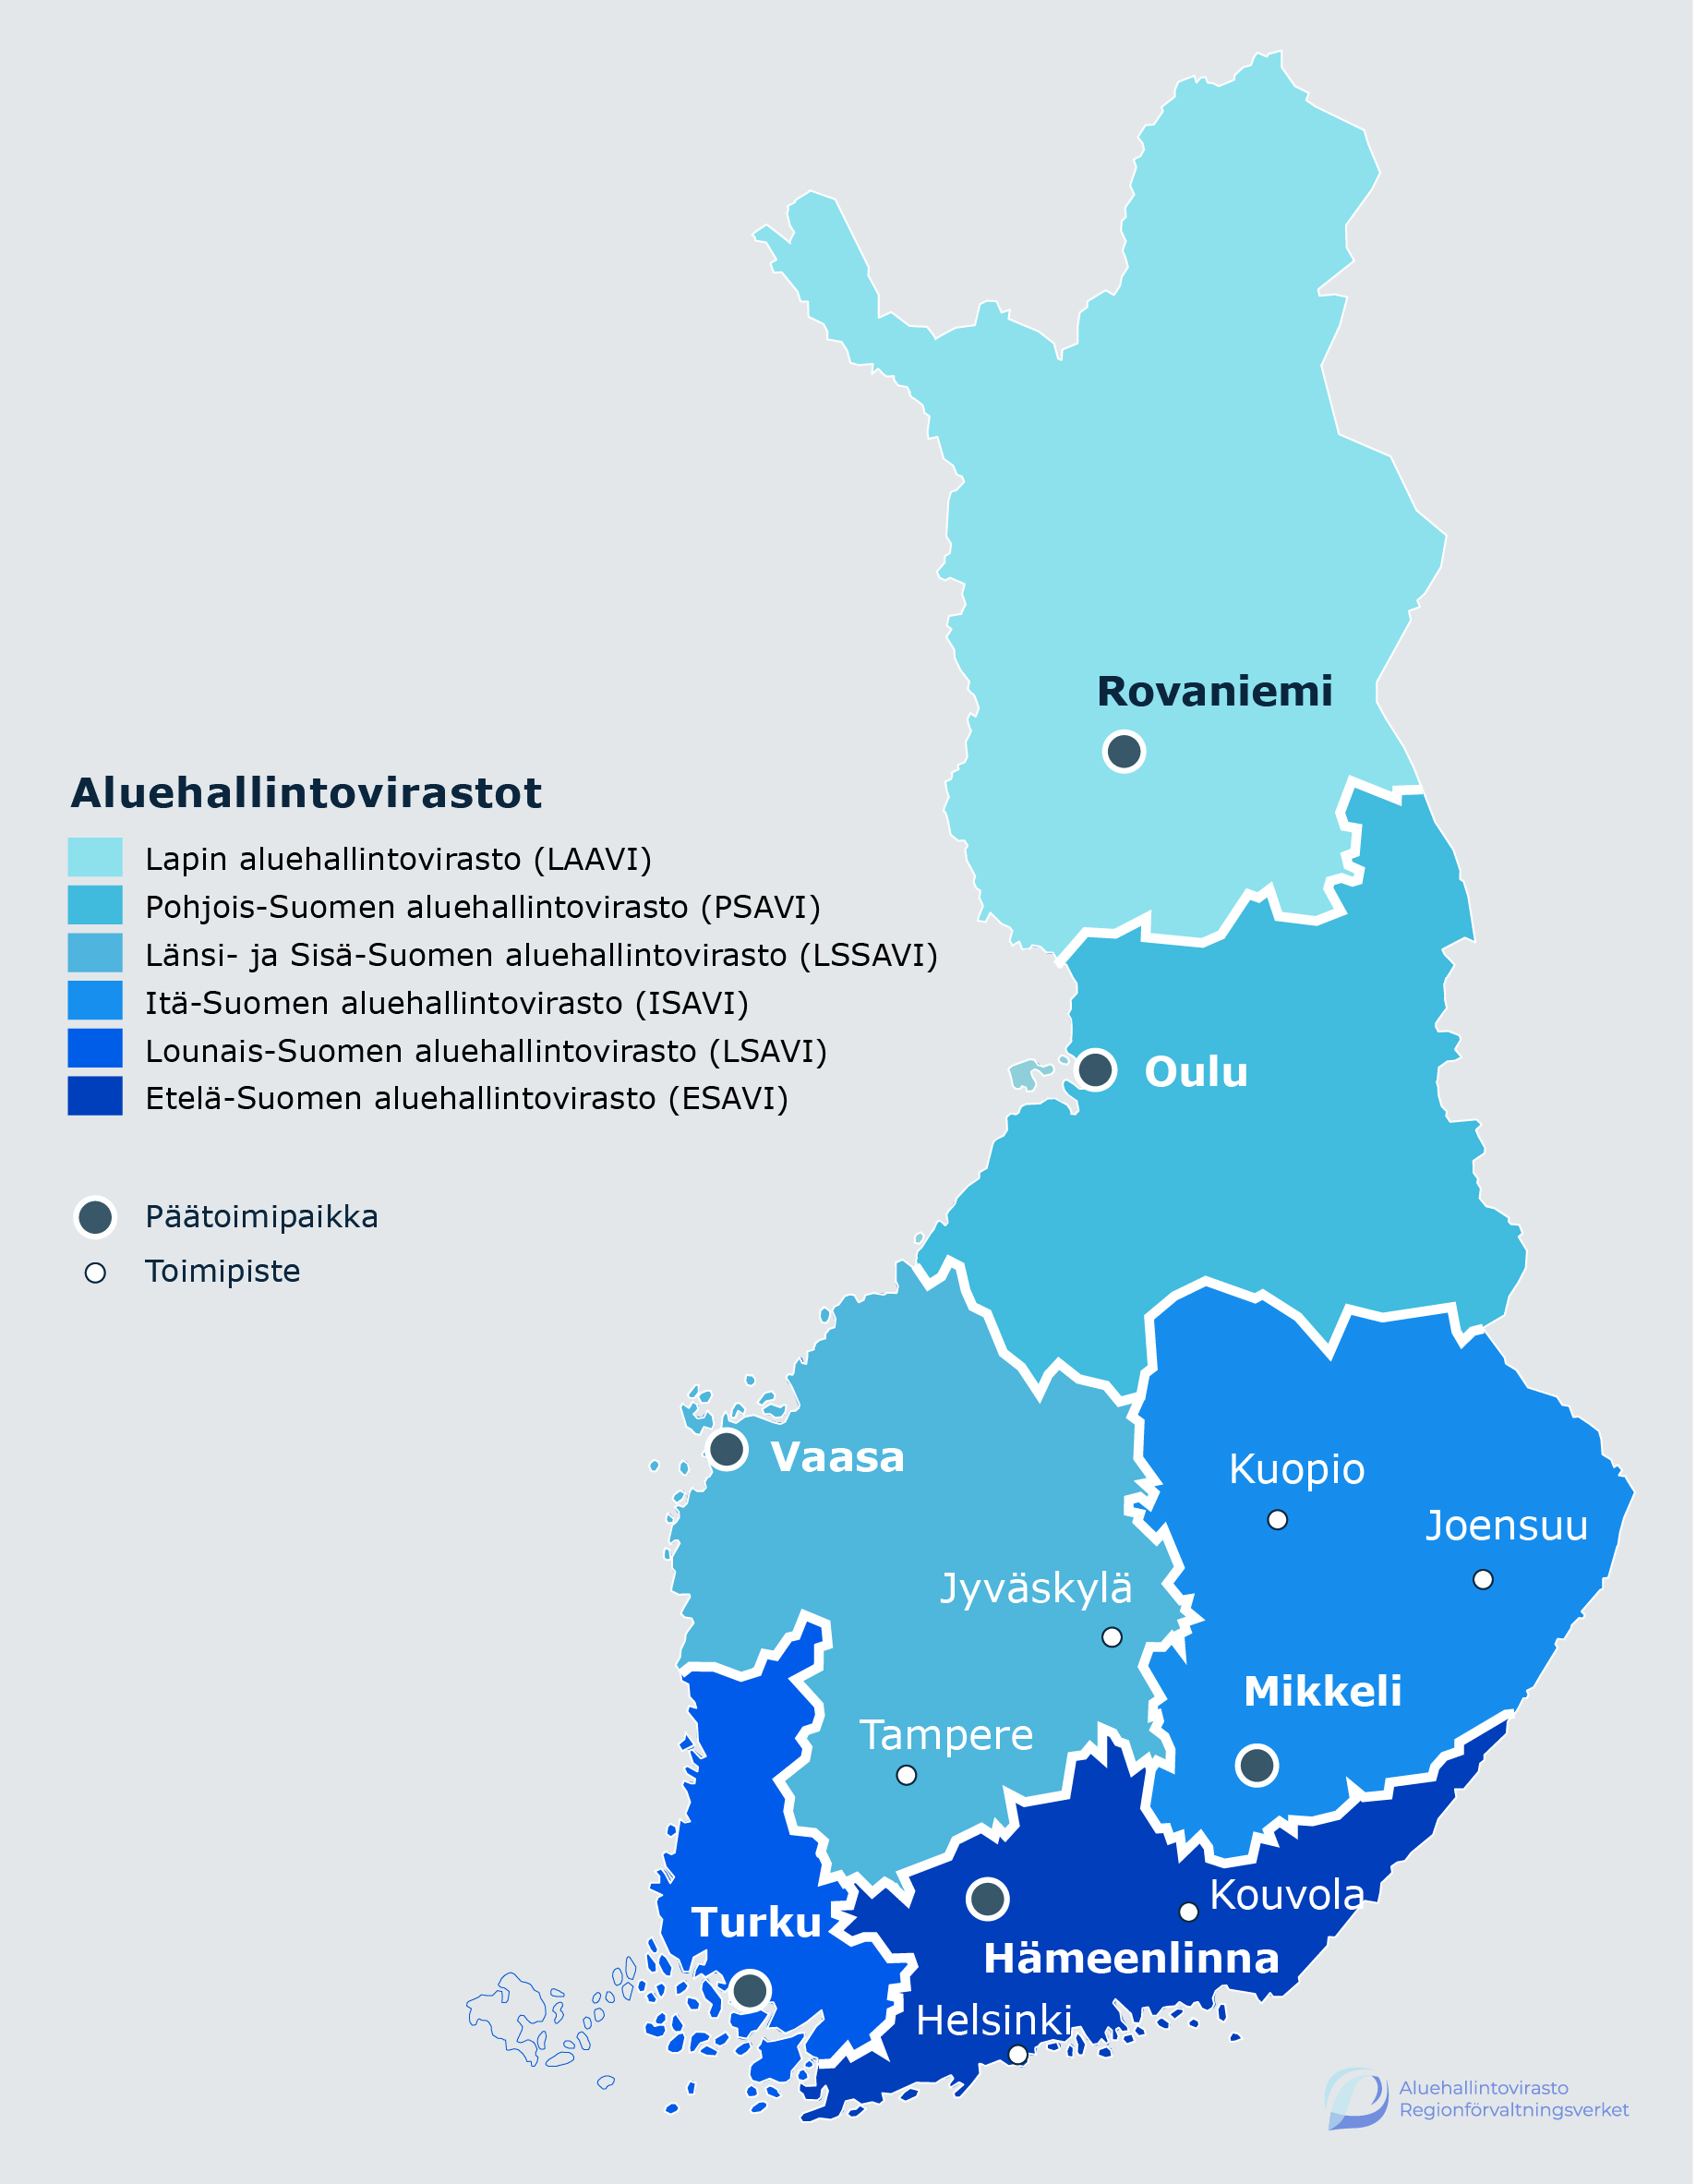 Suomen kartta, johon on merkitty Manner-Suomen aluehallintovirastojen päätoimipaikat ja toimipisteet. Lapin aluehallintoviraston (LAAVI) päätoimipaikka sijaitsee Rovaniemellä. Pohjois-Suomen aluehallintoviraston (PSAVI) päätoimipaikka sijaitsee Oulussa. Länsi- ja Sisä-Suomen aluehallintoviraston (LSSAVI) päätoimipaikka sijaitsee Vaasassa ja muut toimipisteet Jyväskylässä ja Tampereella. Itä-Suomen aluehallintoviraston (ISAVI) päätoimipaikka sijaitse Mikkelissä ja muut toimipisteet Kuopiossa ja Joensuussa. Lounais-Suomen aluehallintoviraston (LSAVI) päätoimipaikka sijaitsee Turussa. Etelä-Suomen aluehallintoviraston (ESAVI) päätoimipaikka sijaitsee Hämeenlinnassa ja muut toimipisteet Helsingissä ja Kouvolassa.